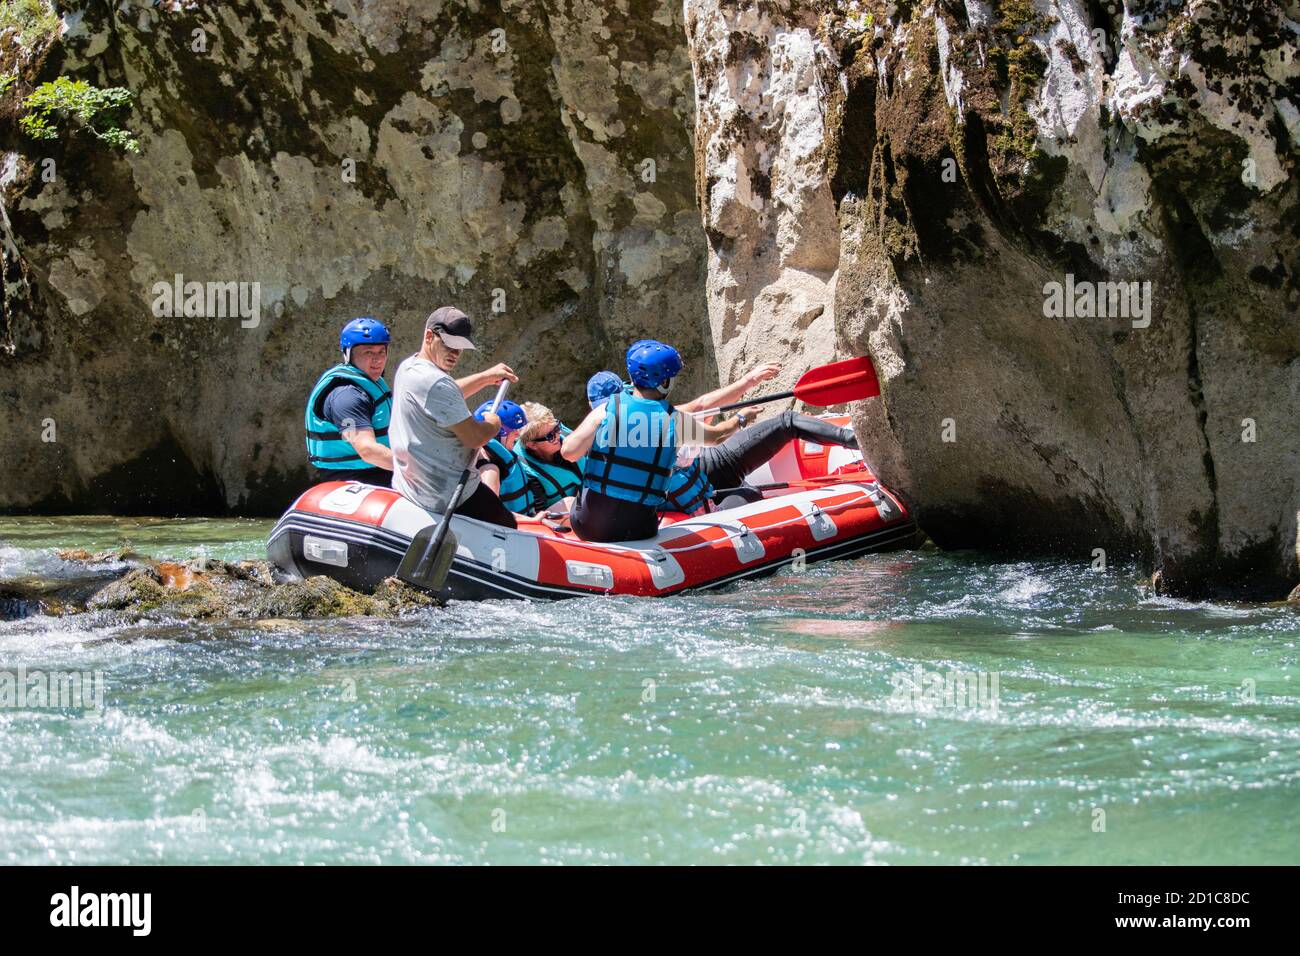 El equipo de rafting se apuñaló en el río Foto de stock